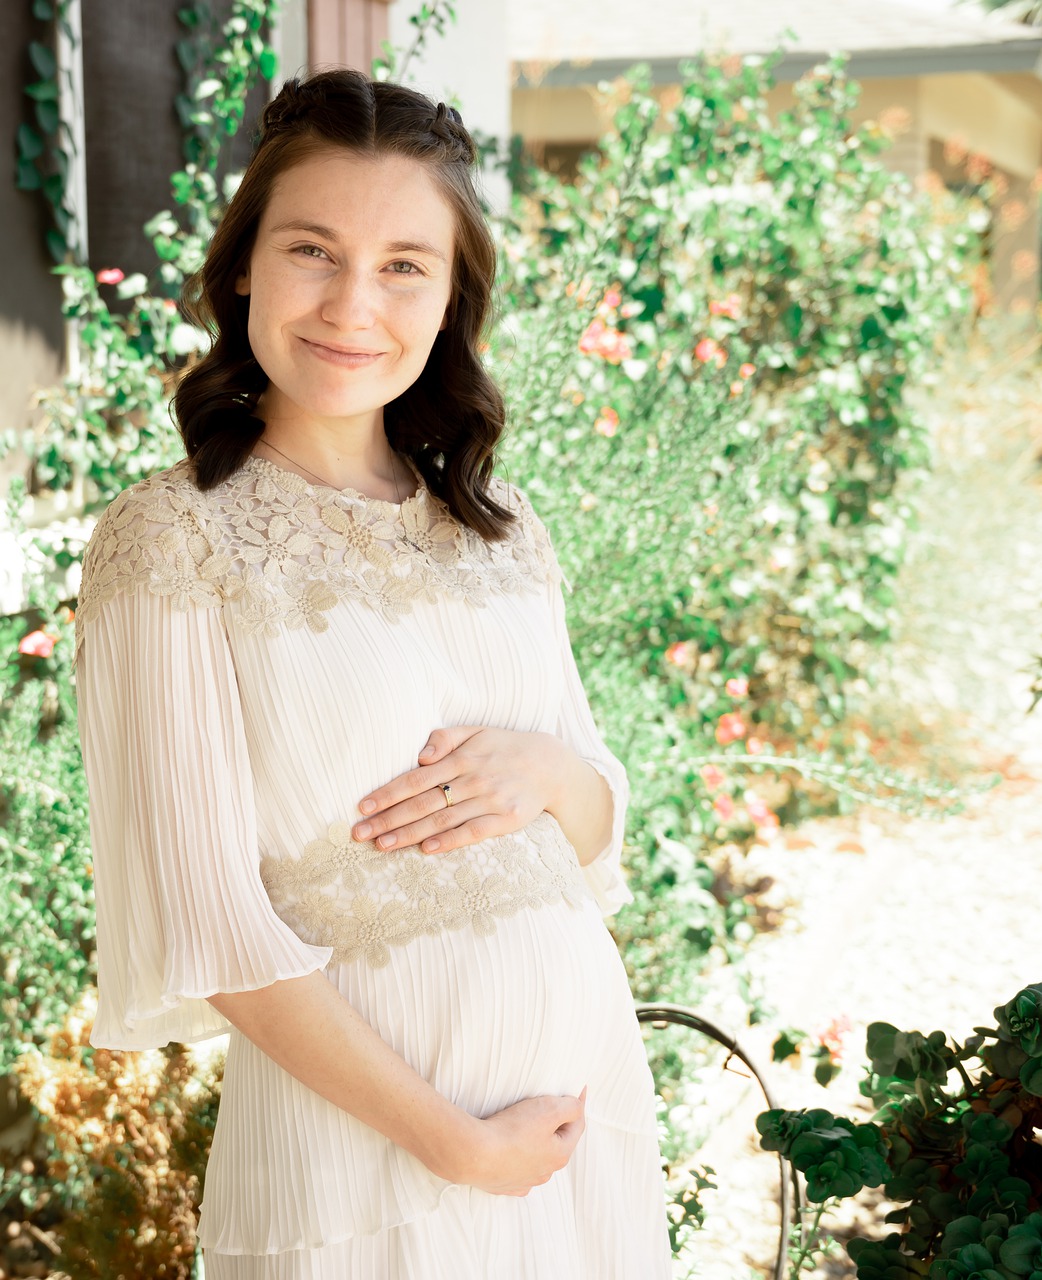 29 tydzień ciąży, mama z brzuszkiem,Pixabay